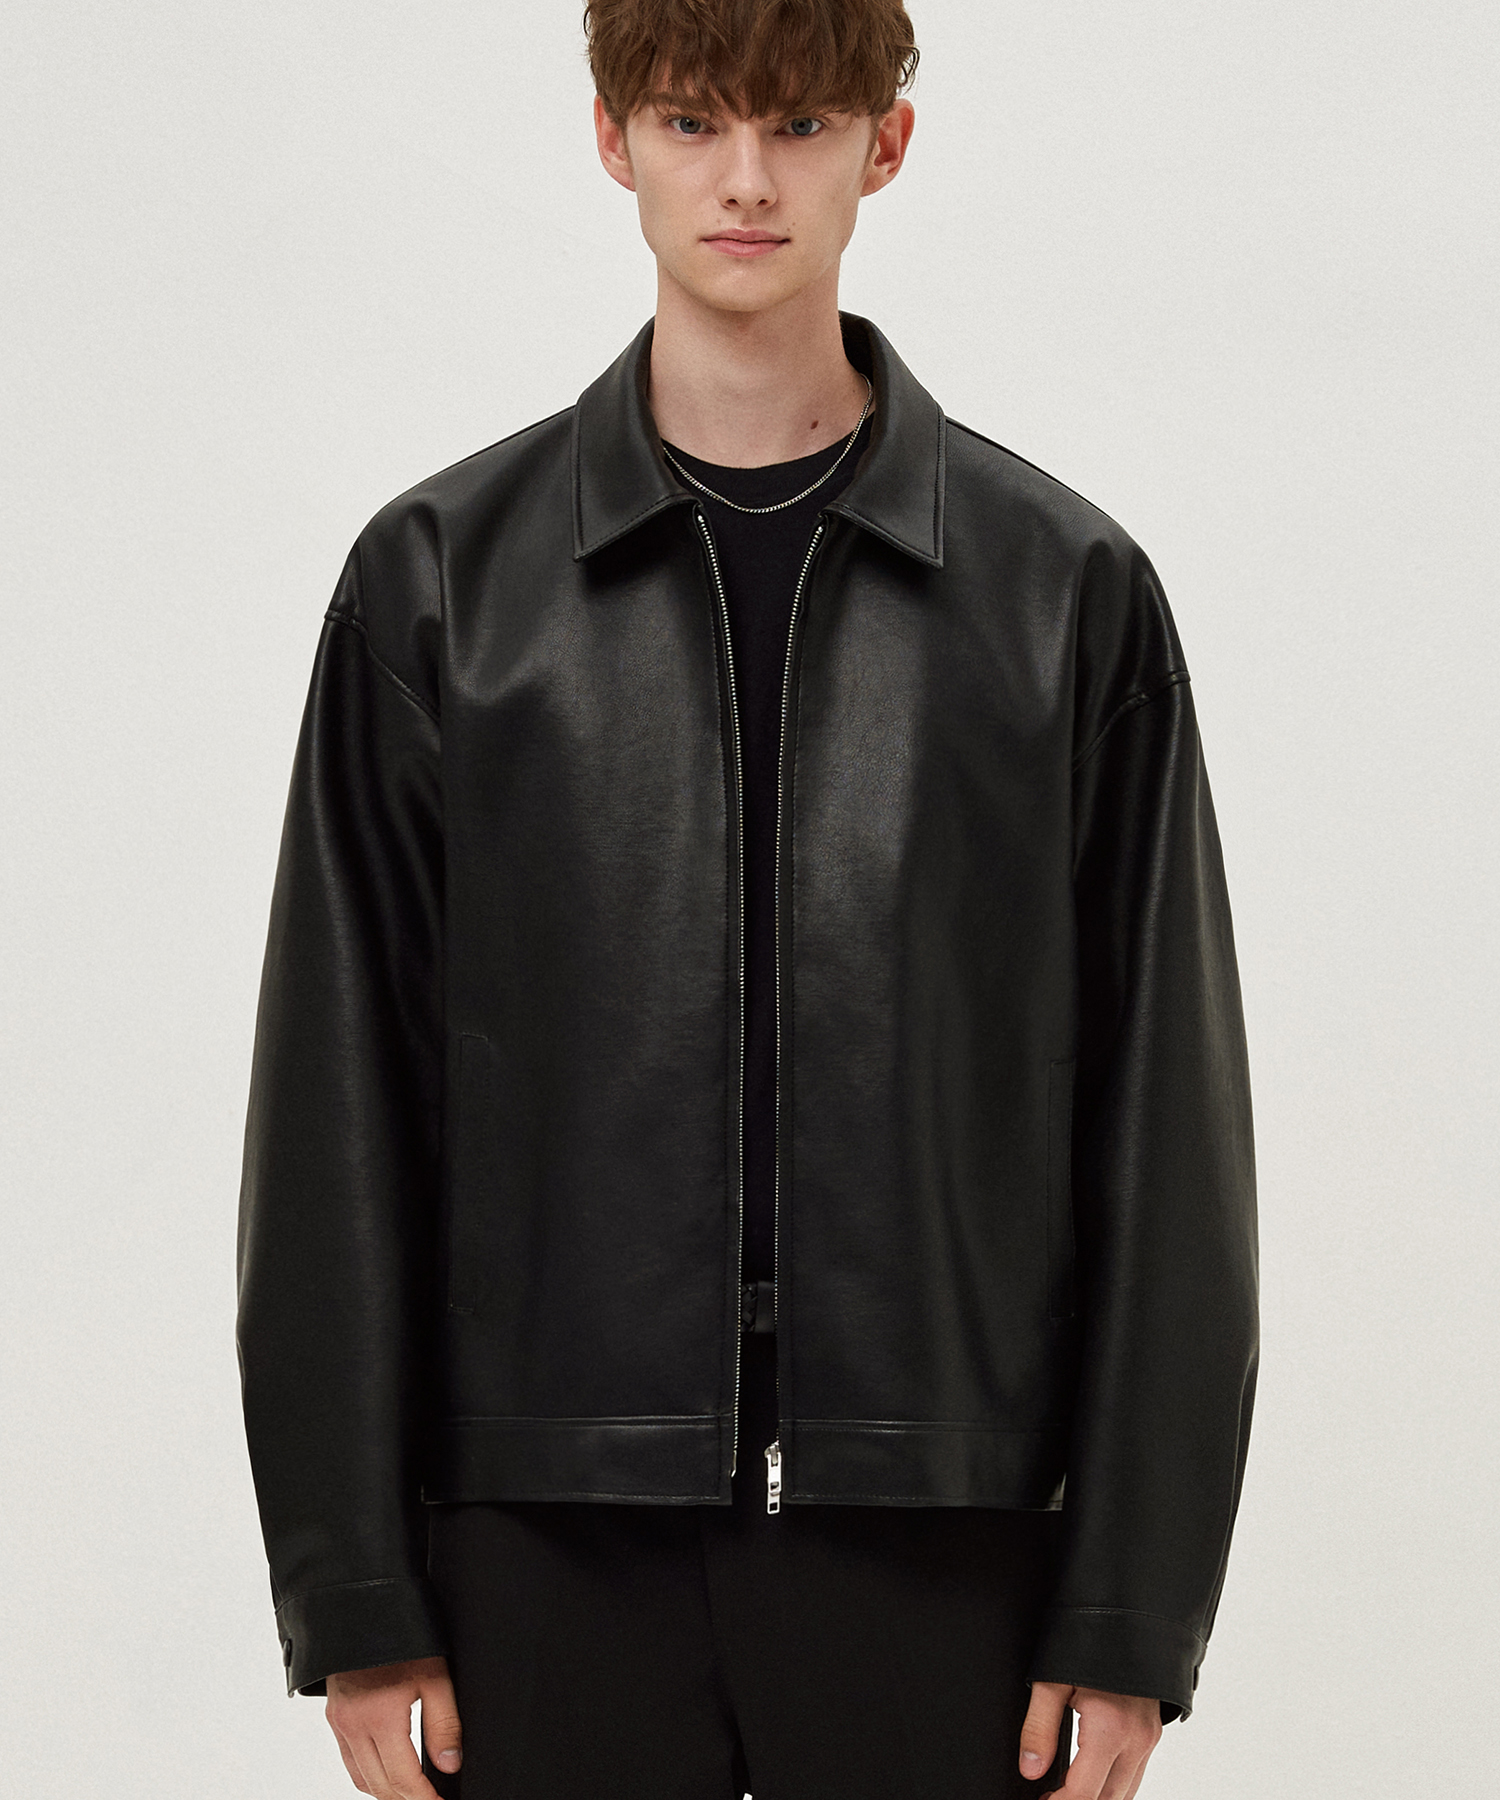 Overfit vegan leather single jacket